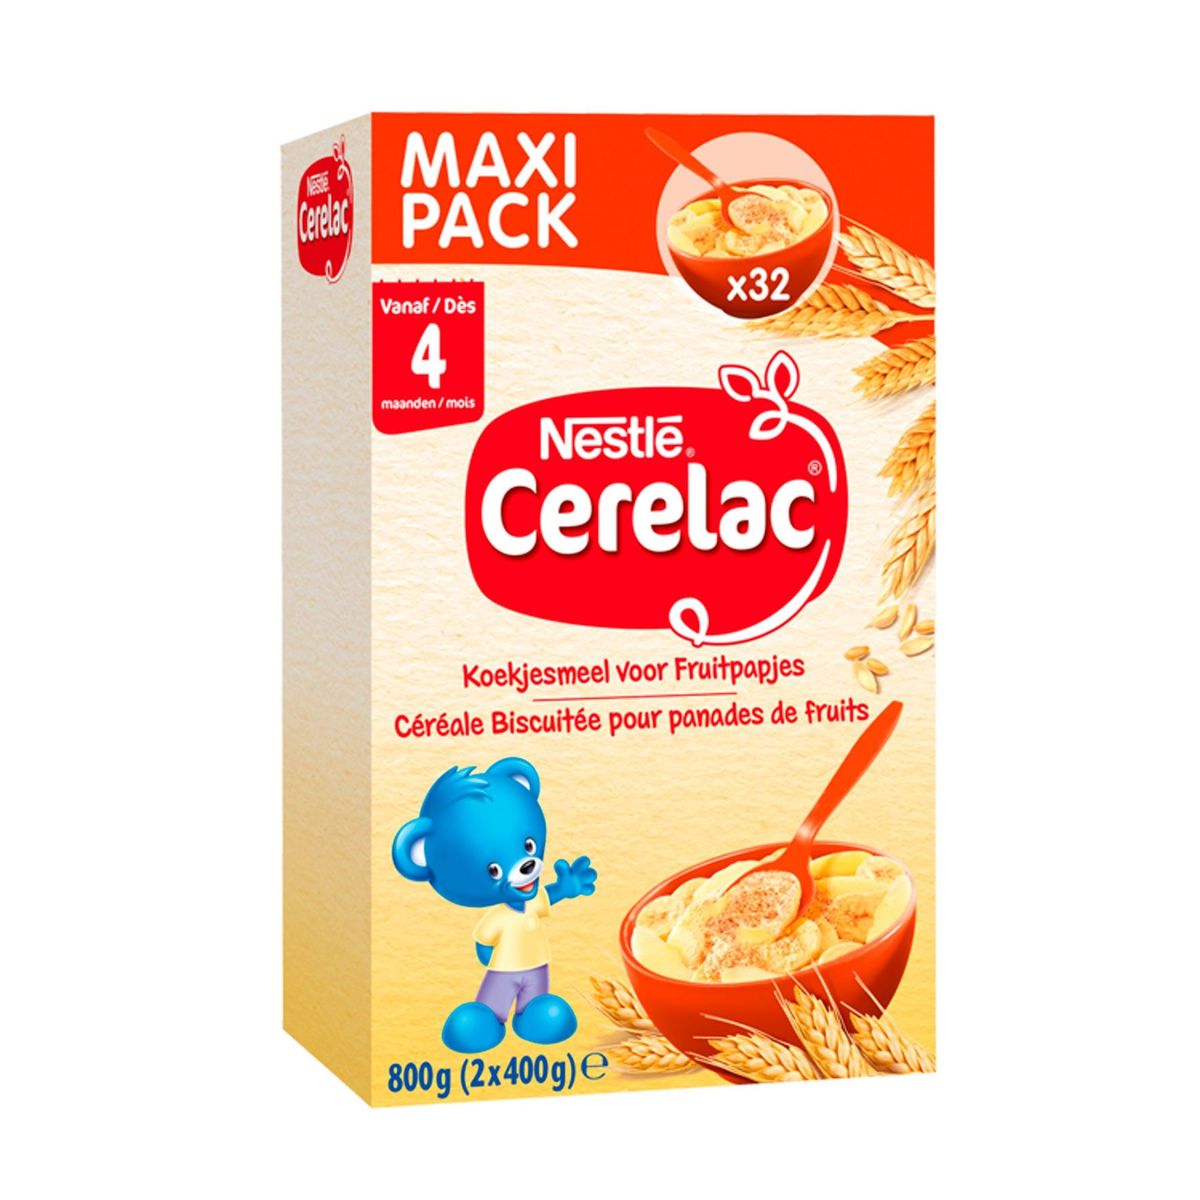 Cerelac Céréale Biscuitée pour Panades de Fruits dès 4+ Mois Maxi Pack 2 x 400 g